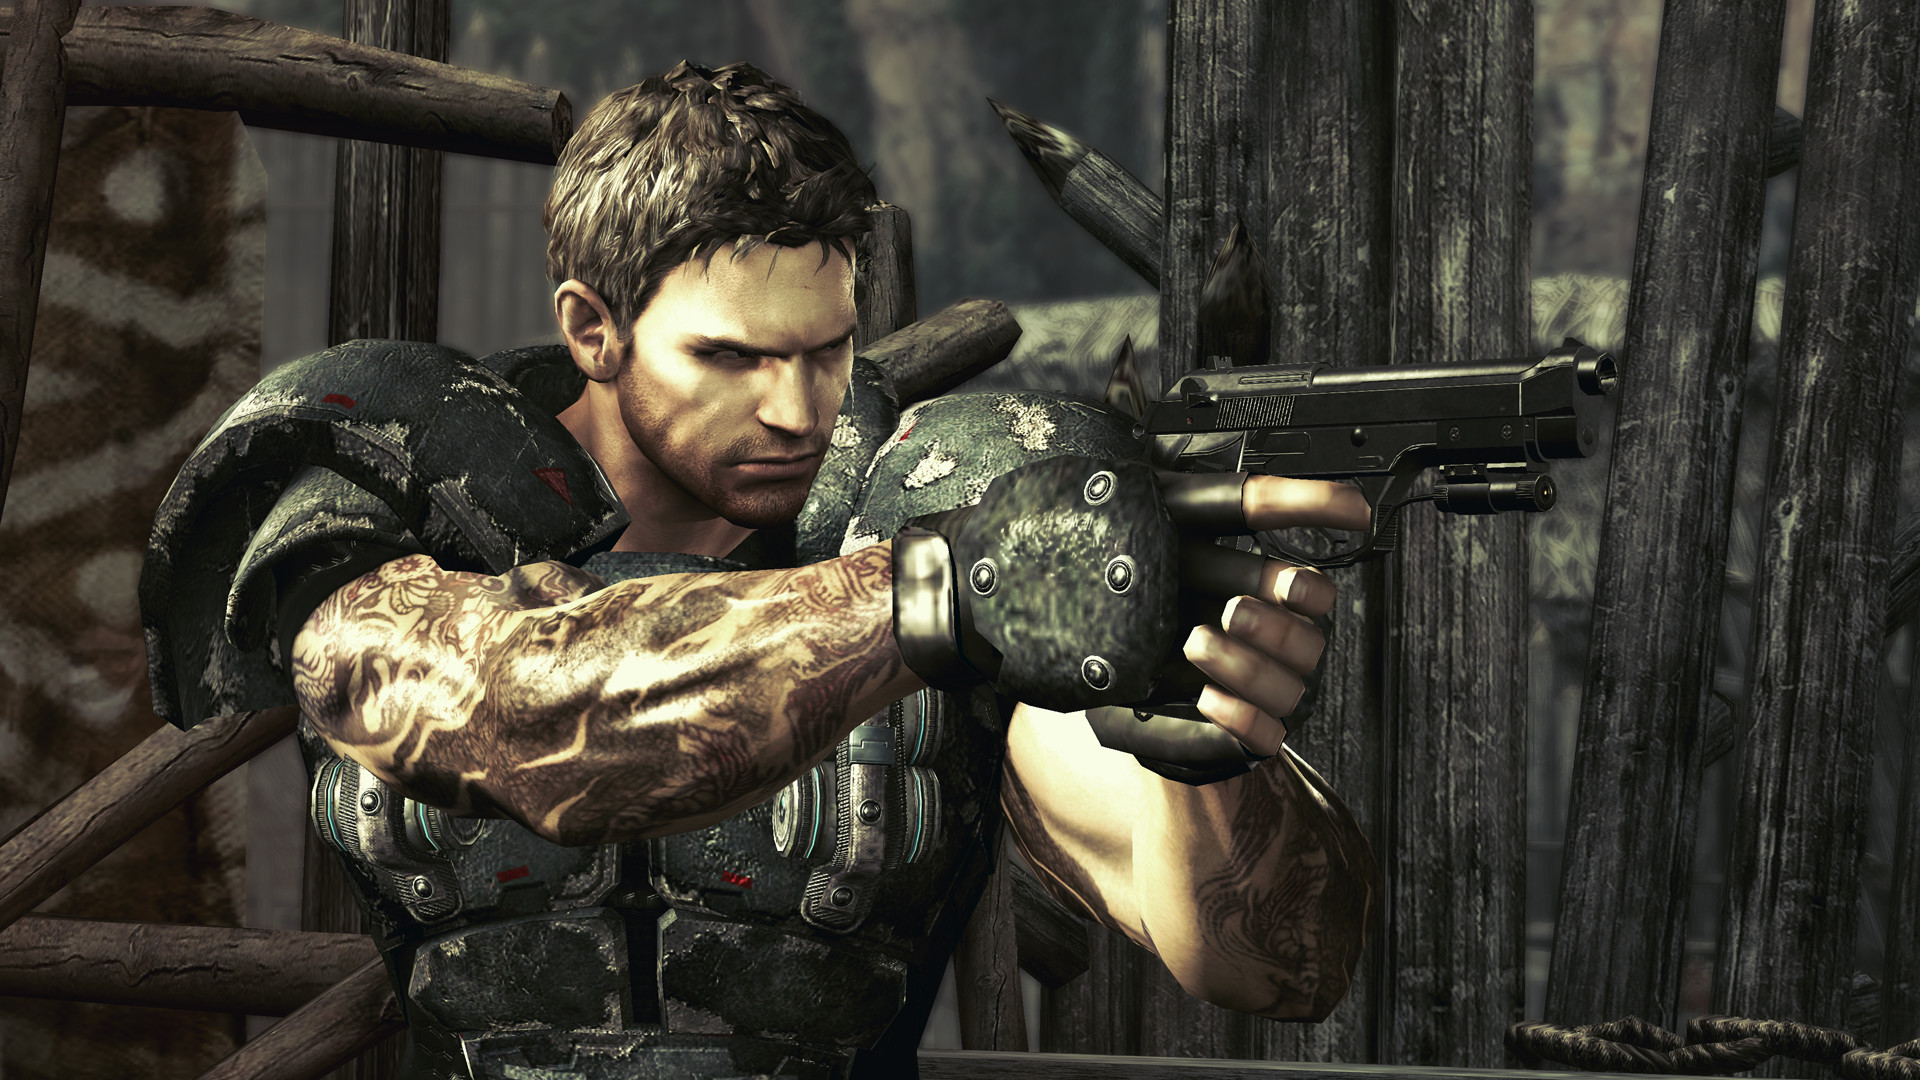 Resident Evil On Brazil: [RE5] The Mercenaries Reunion